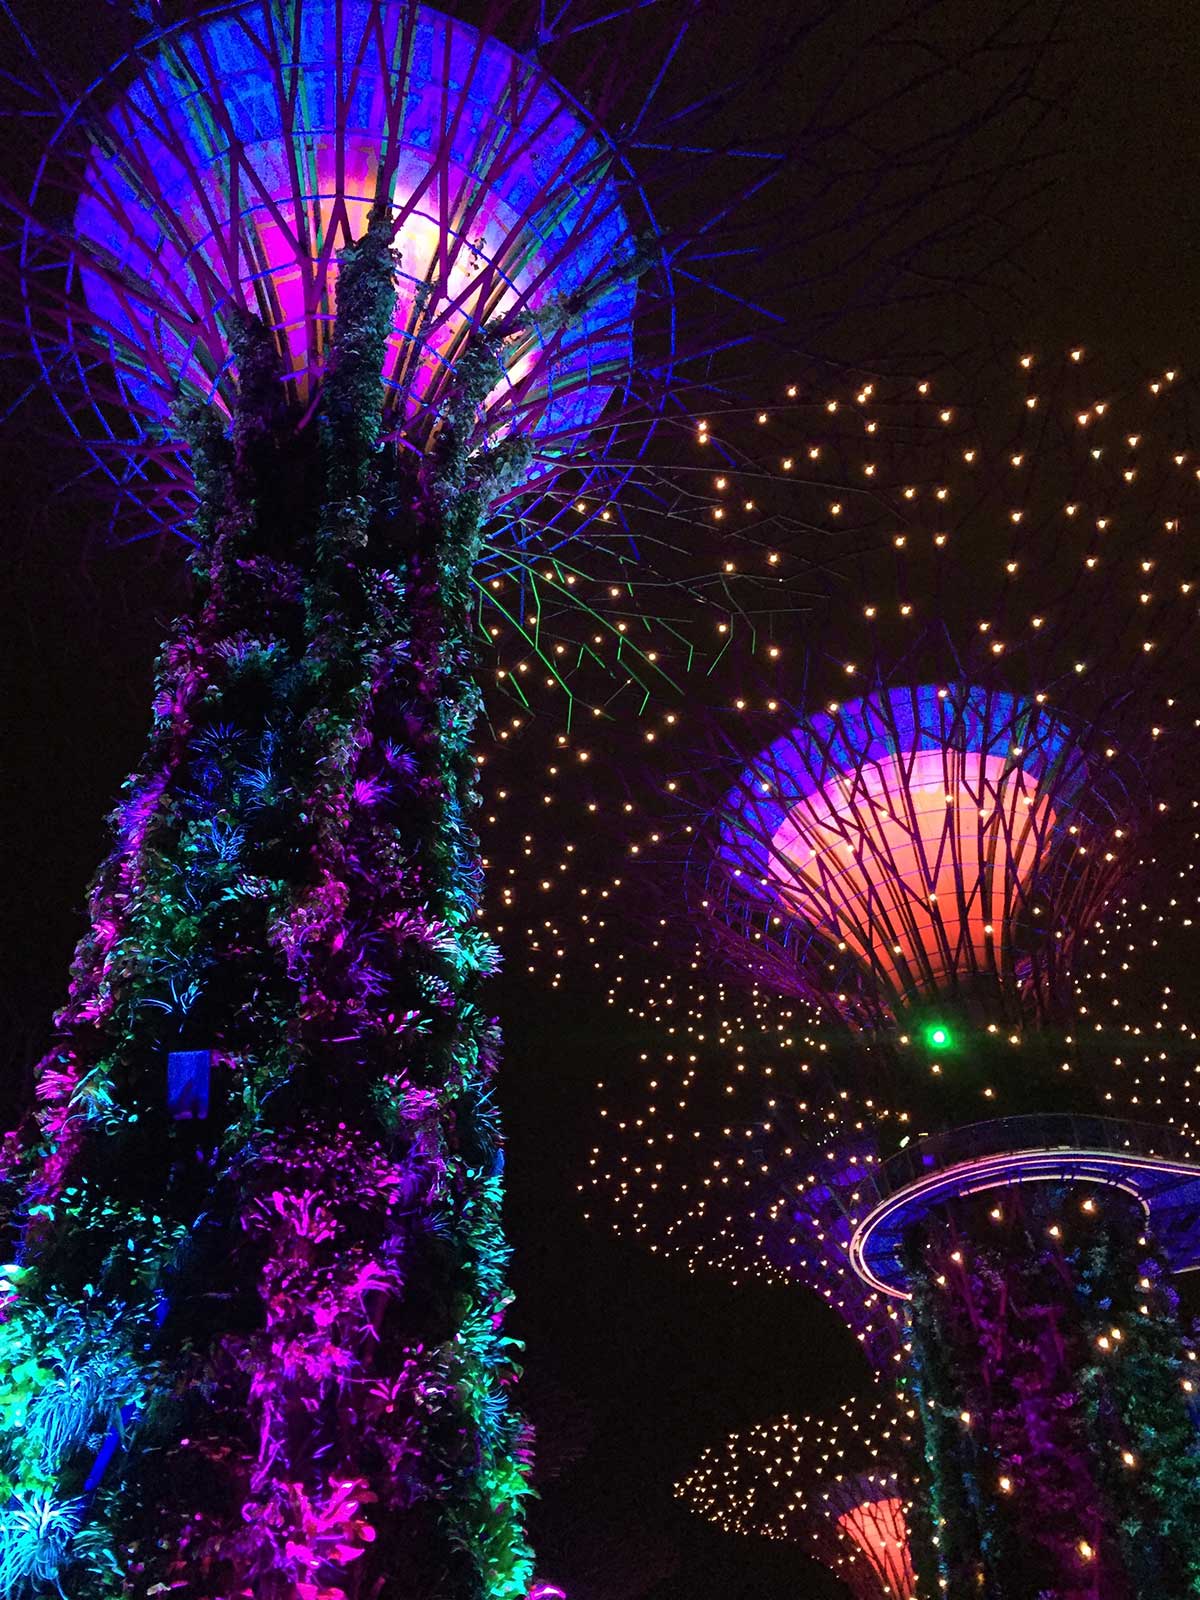 Sehenswürdigkeiten in Singapur; Supertrees, Gardens by the Bay